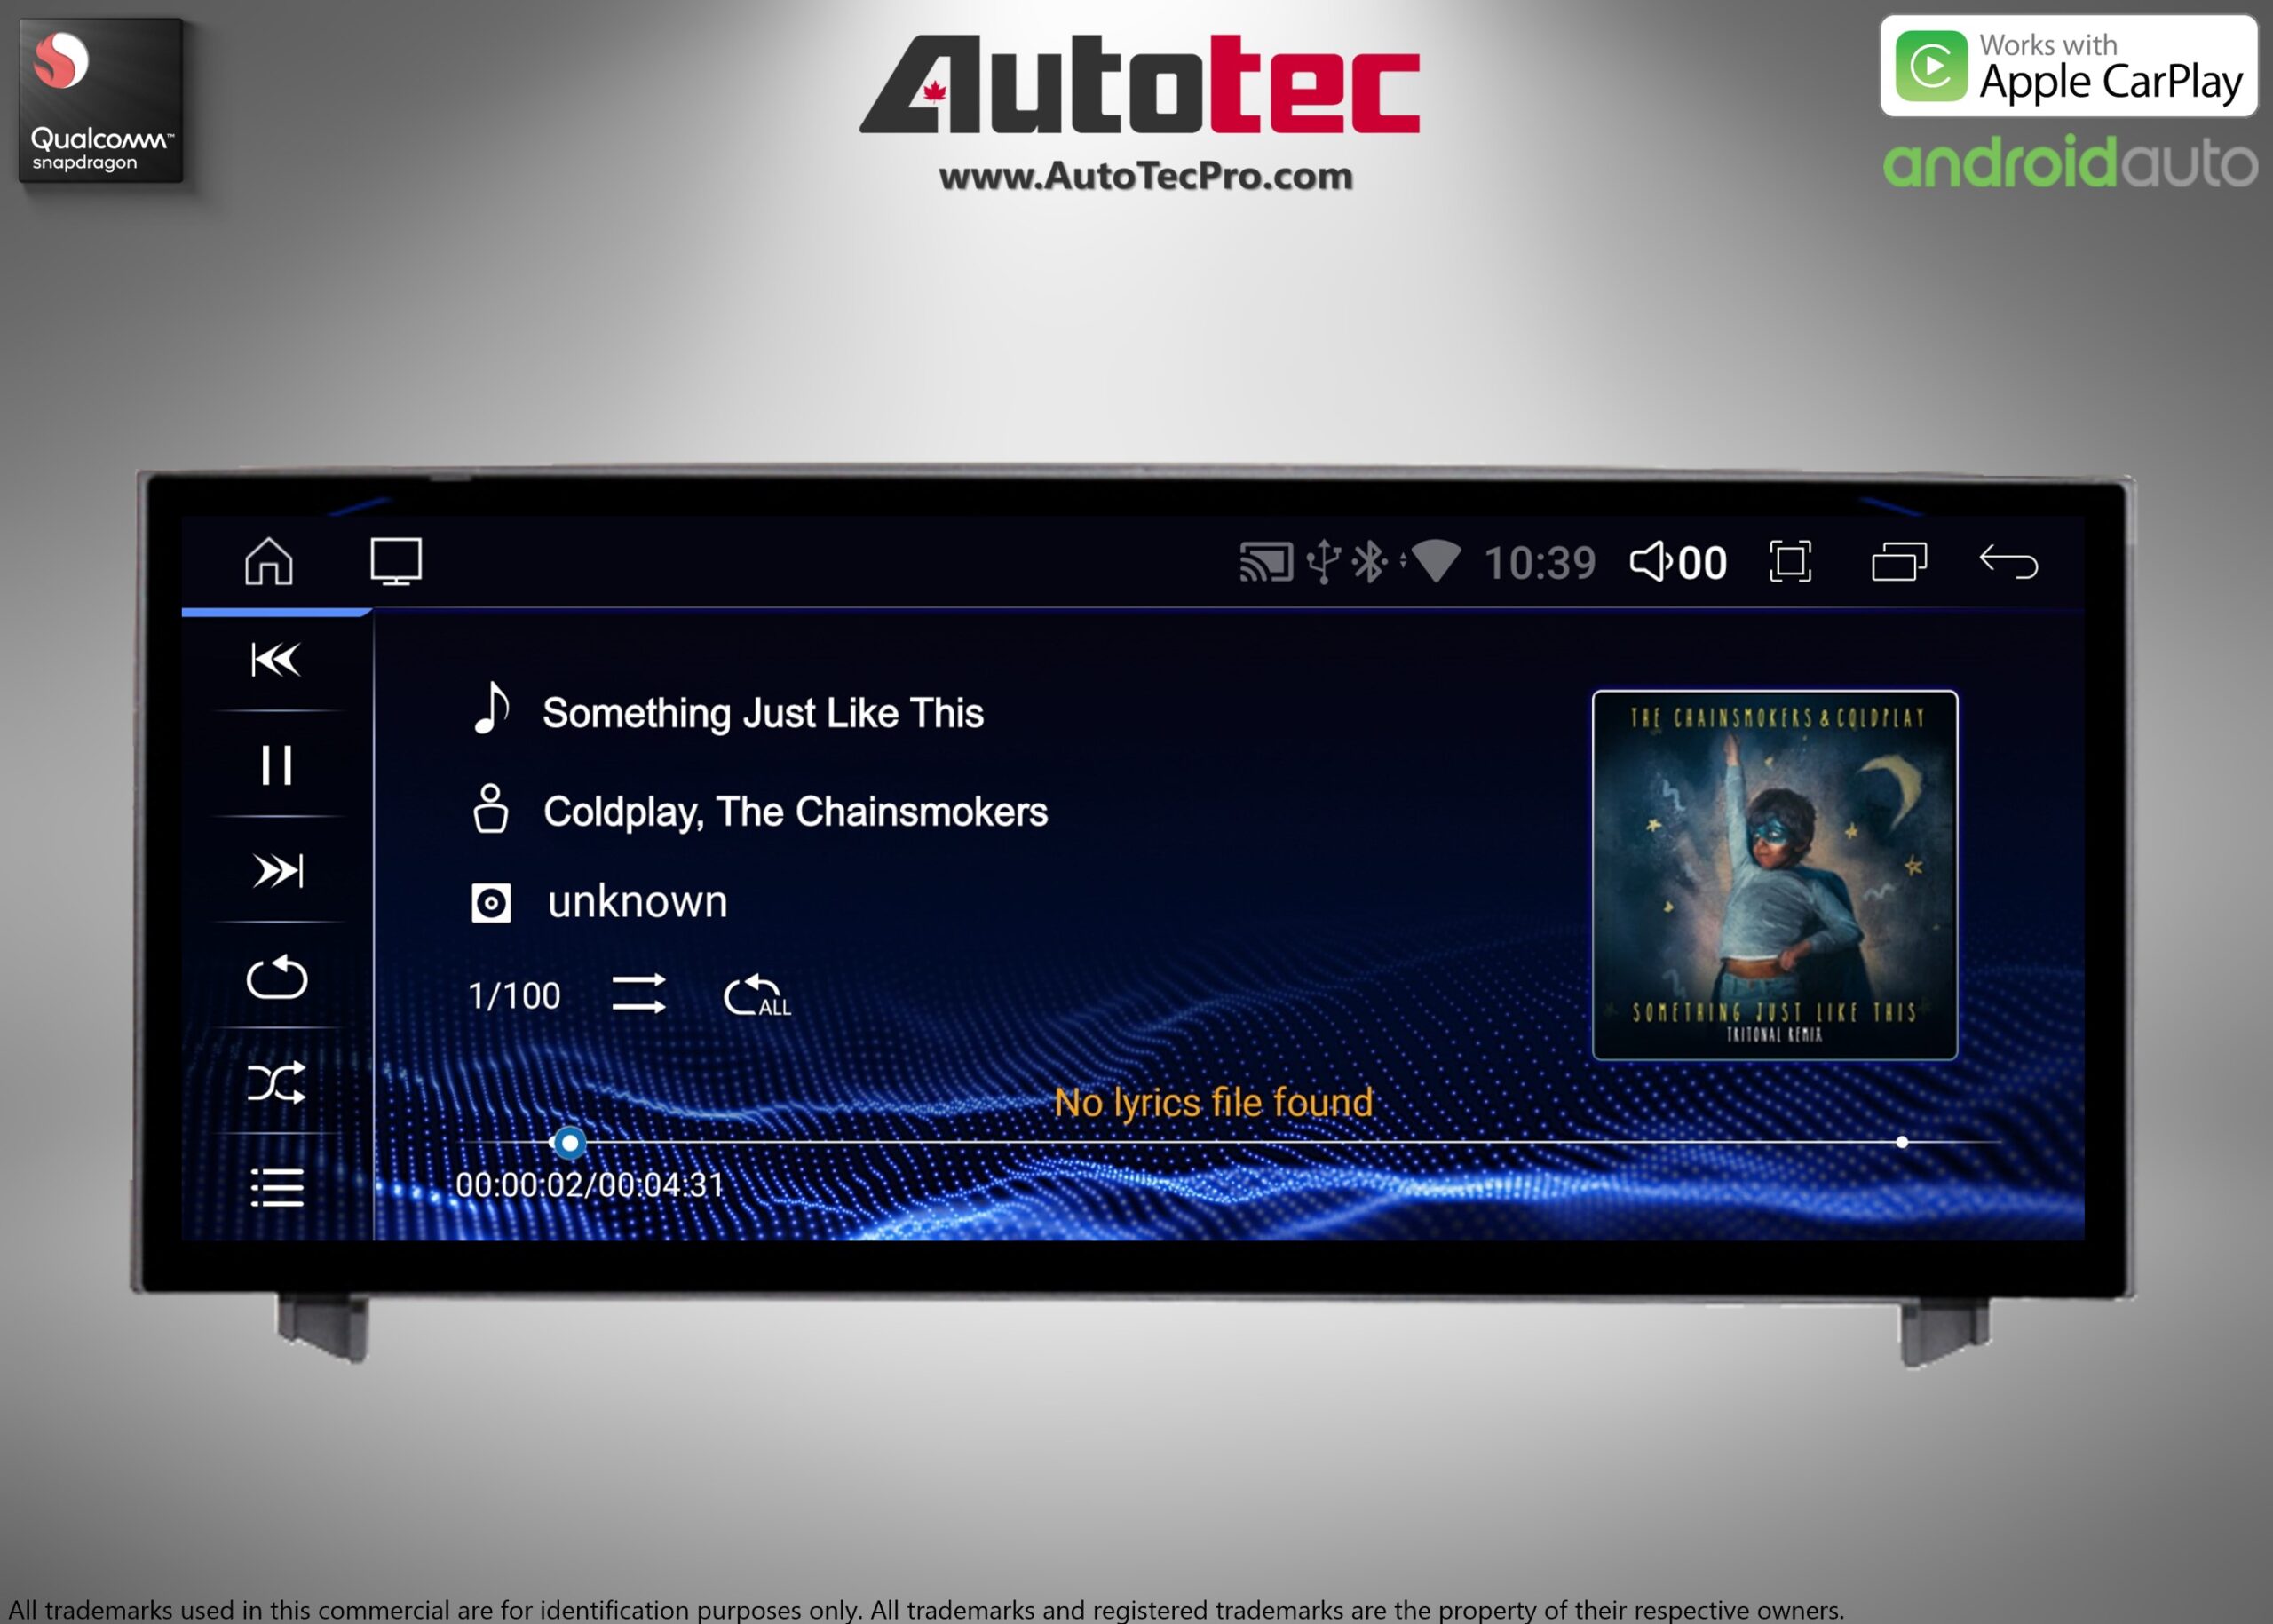 Lexus IS ( 2014- 2019 ) 10.25″ HD Touch-Screen Navigation & Infotainment System | GPS | BT | Wifi | A2DP | CarPlay